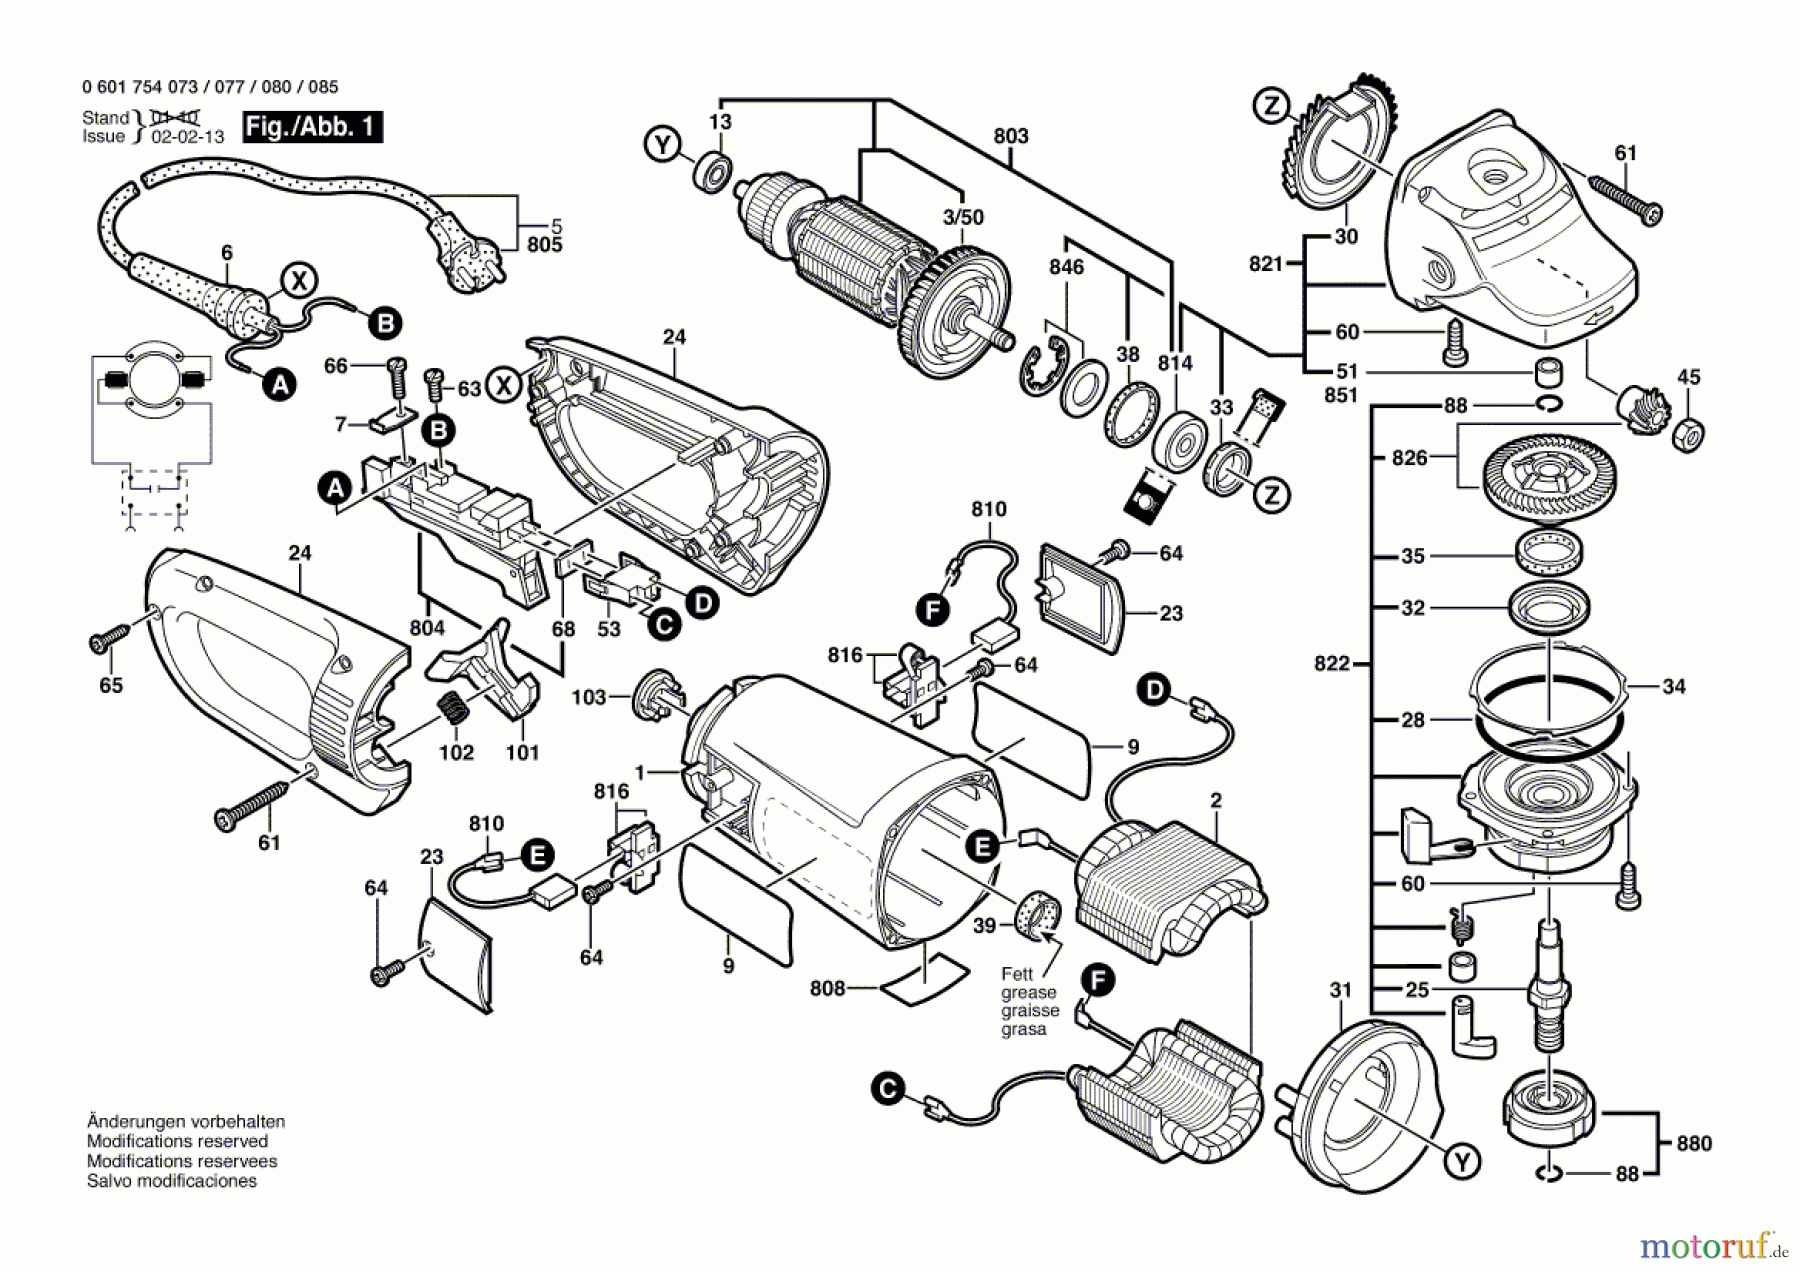  Bosch Werkzeug Winkelschleifer GWS 23-230 S Seite 1